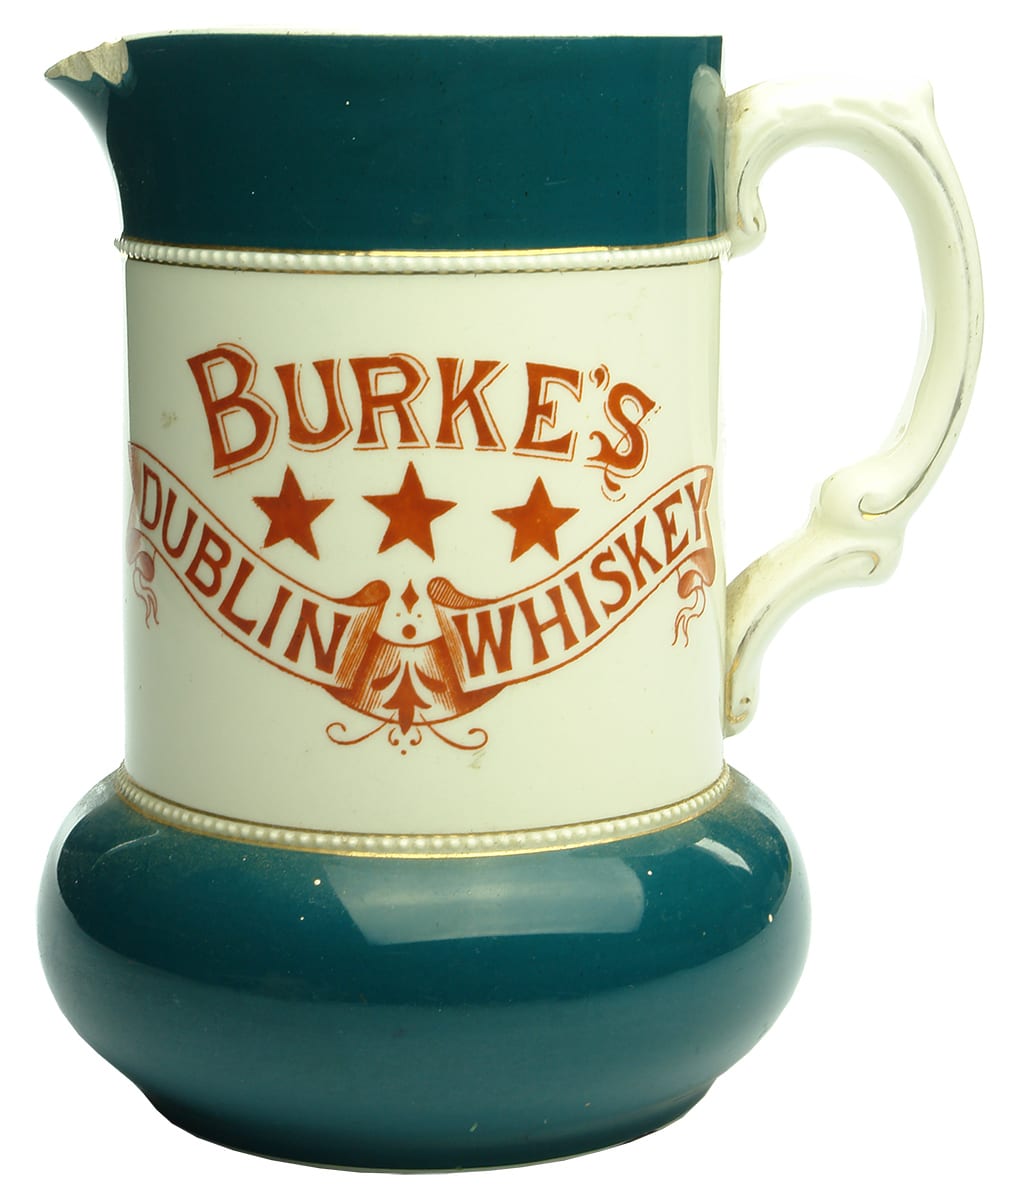 Burkes Dublin Whisky Water Jug